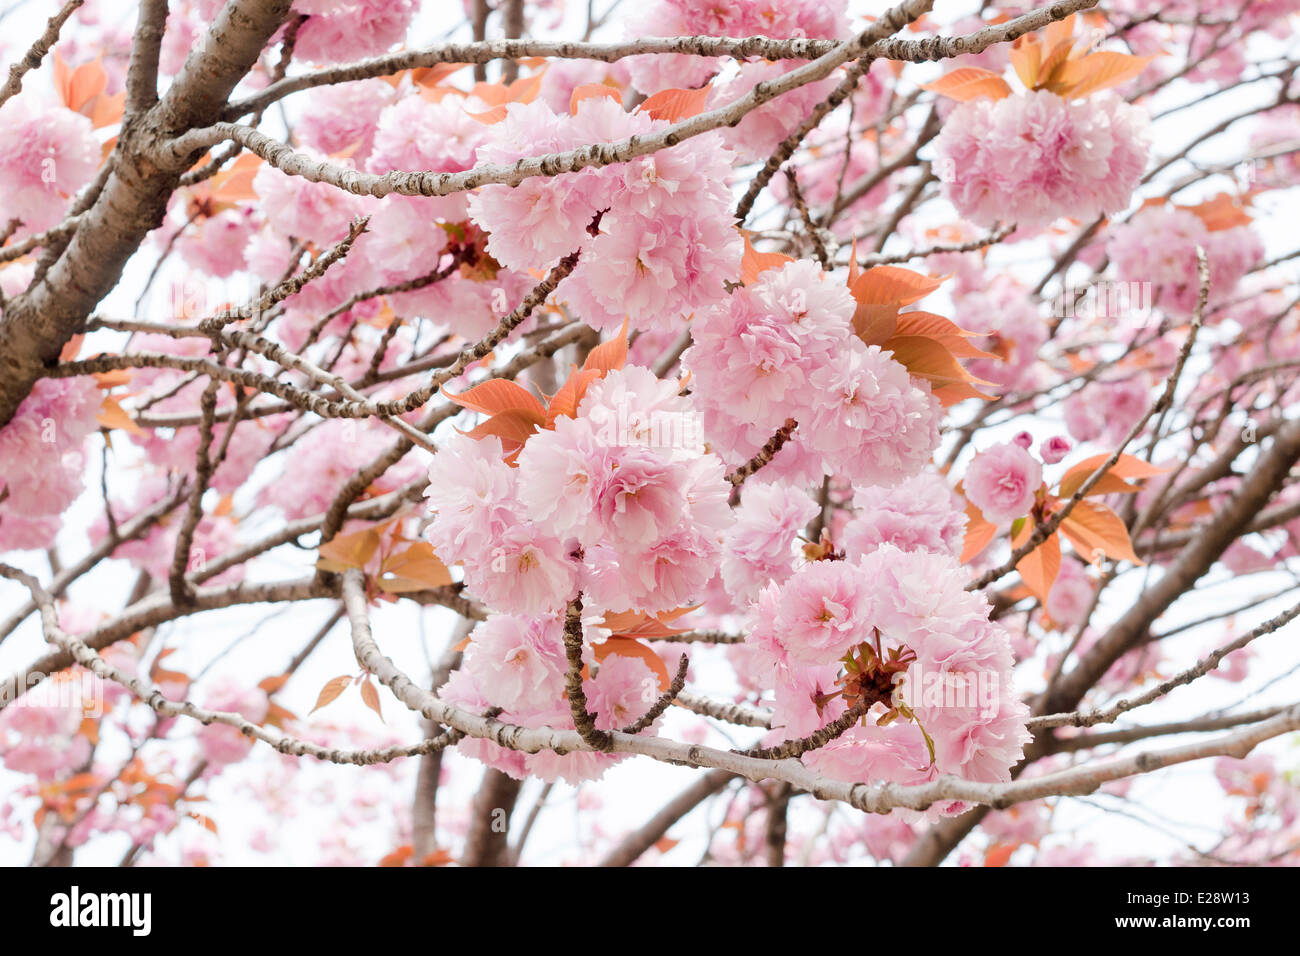 many blossom flowers of Japanese cherry tree closeup Stock Photo